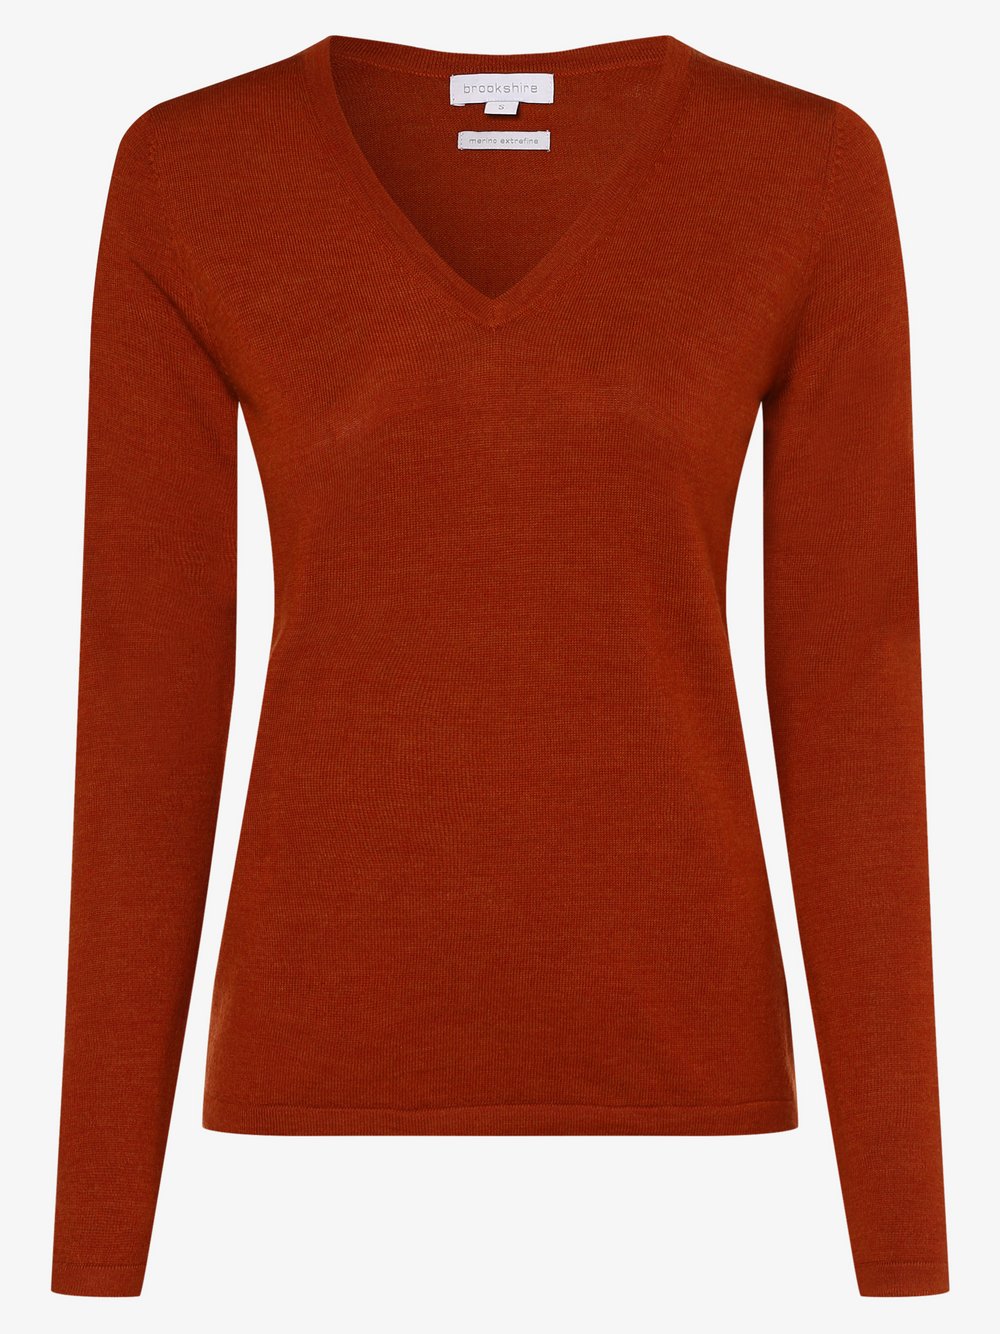 Brookshire - Damski sweter z wełny merino, pomarańczowy